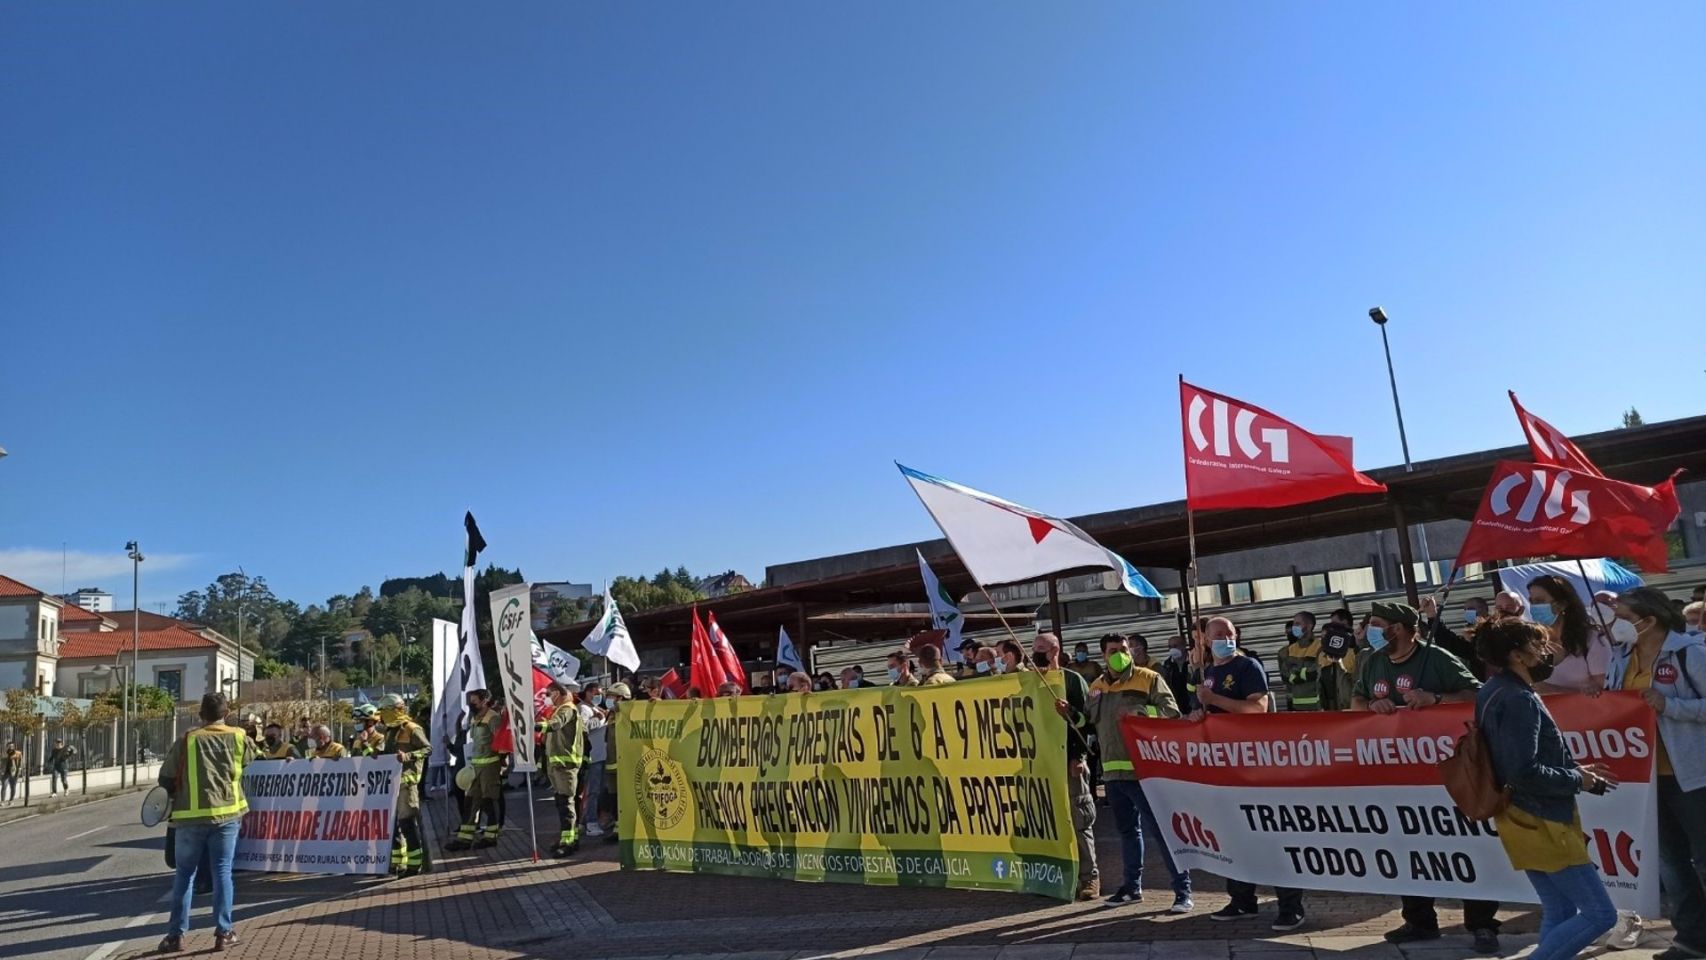 Bomberos forestales protestan ante la Xunta para reclamar "estabilidad laboral".